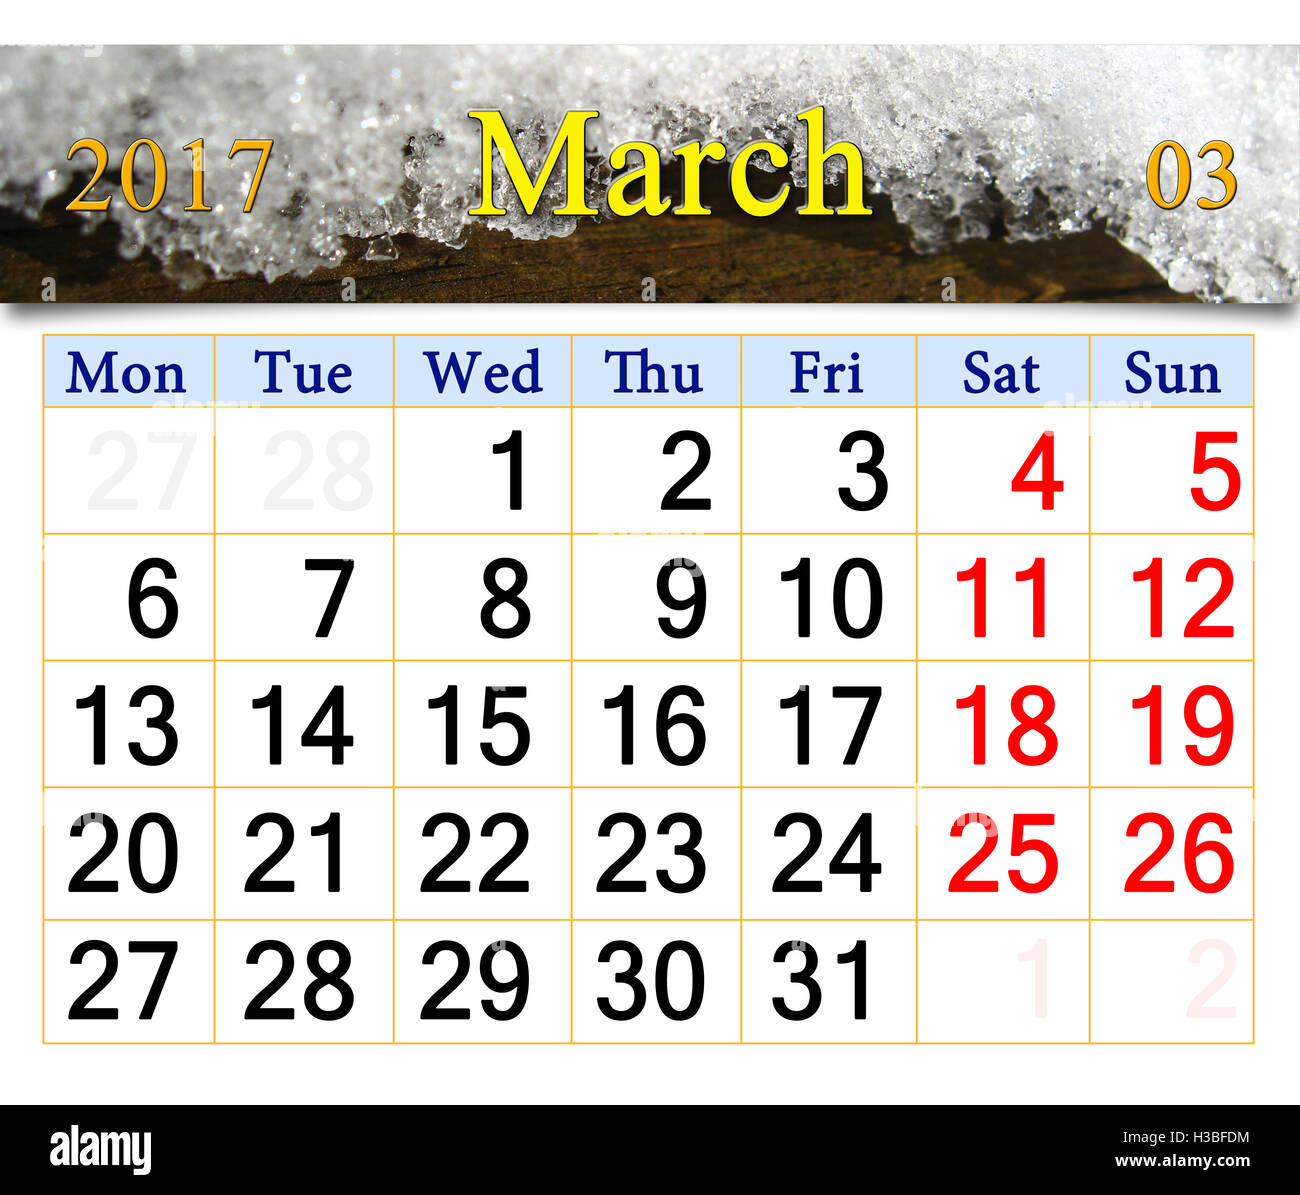 Calendario para marzo de 2017, con una capa de nieve sobre el árbol. Calendario para imprimir y usar en la oficina. Foto de stock